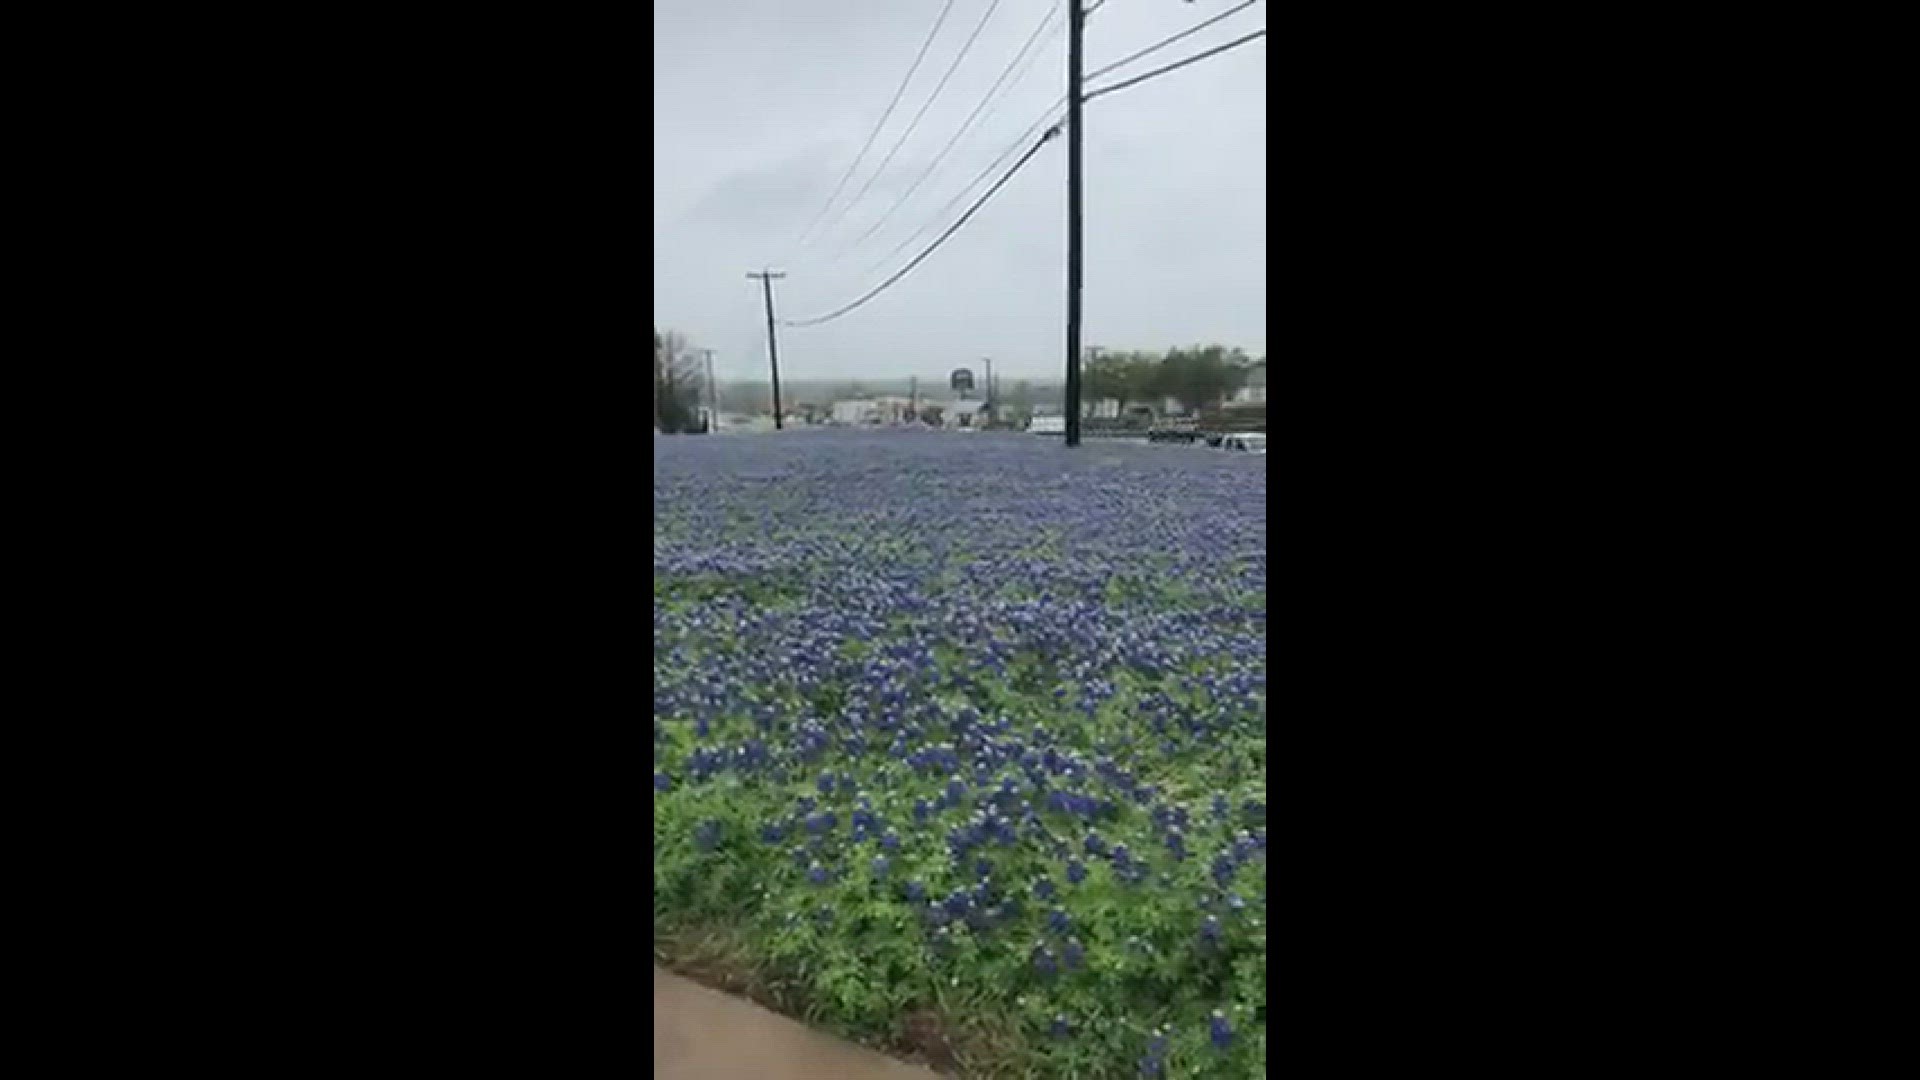 A beautiful field of bluebonnets in Temple, TX
Credit: Eneida